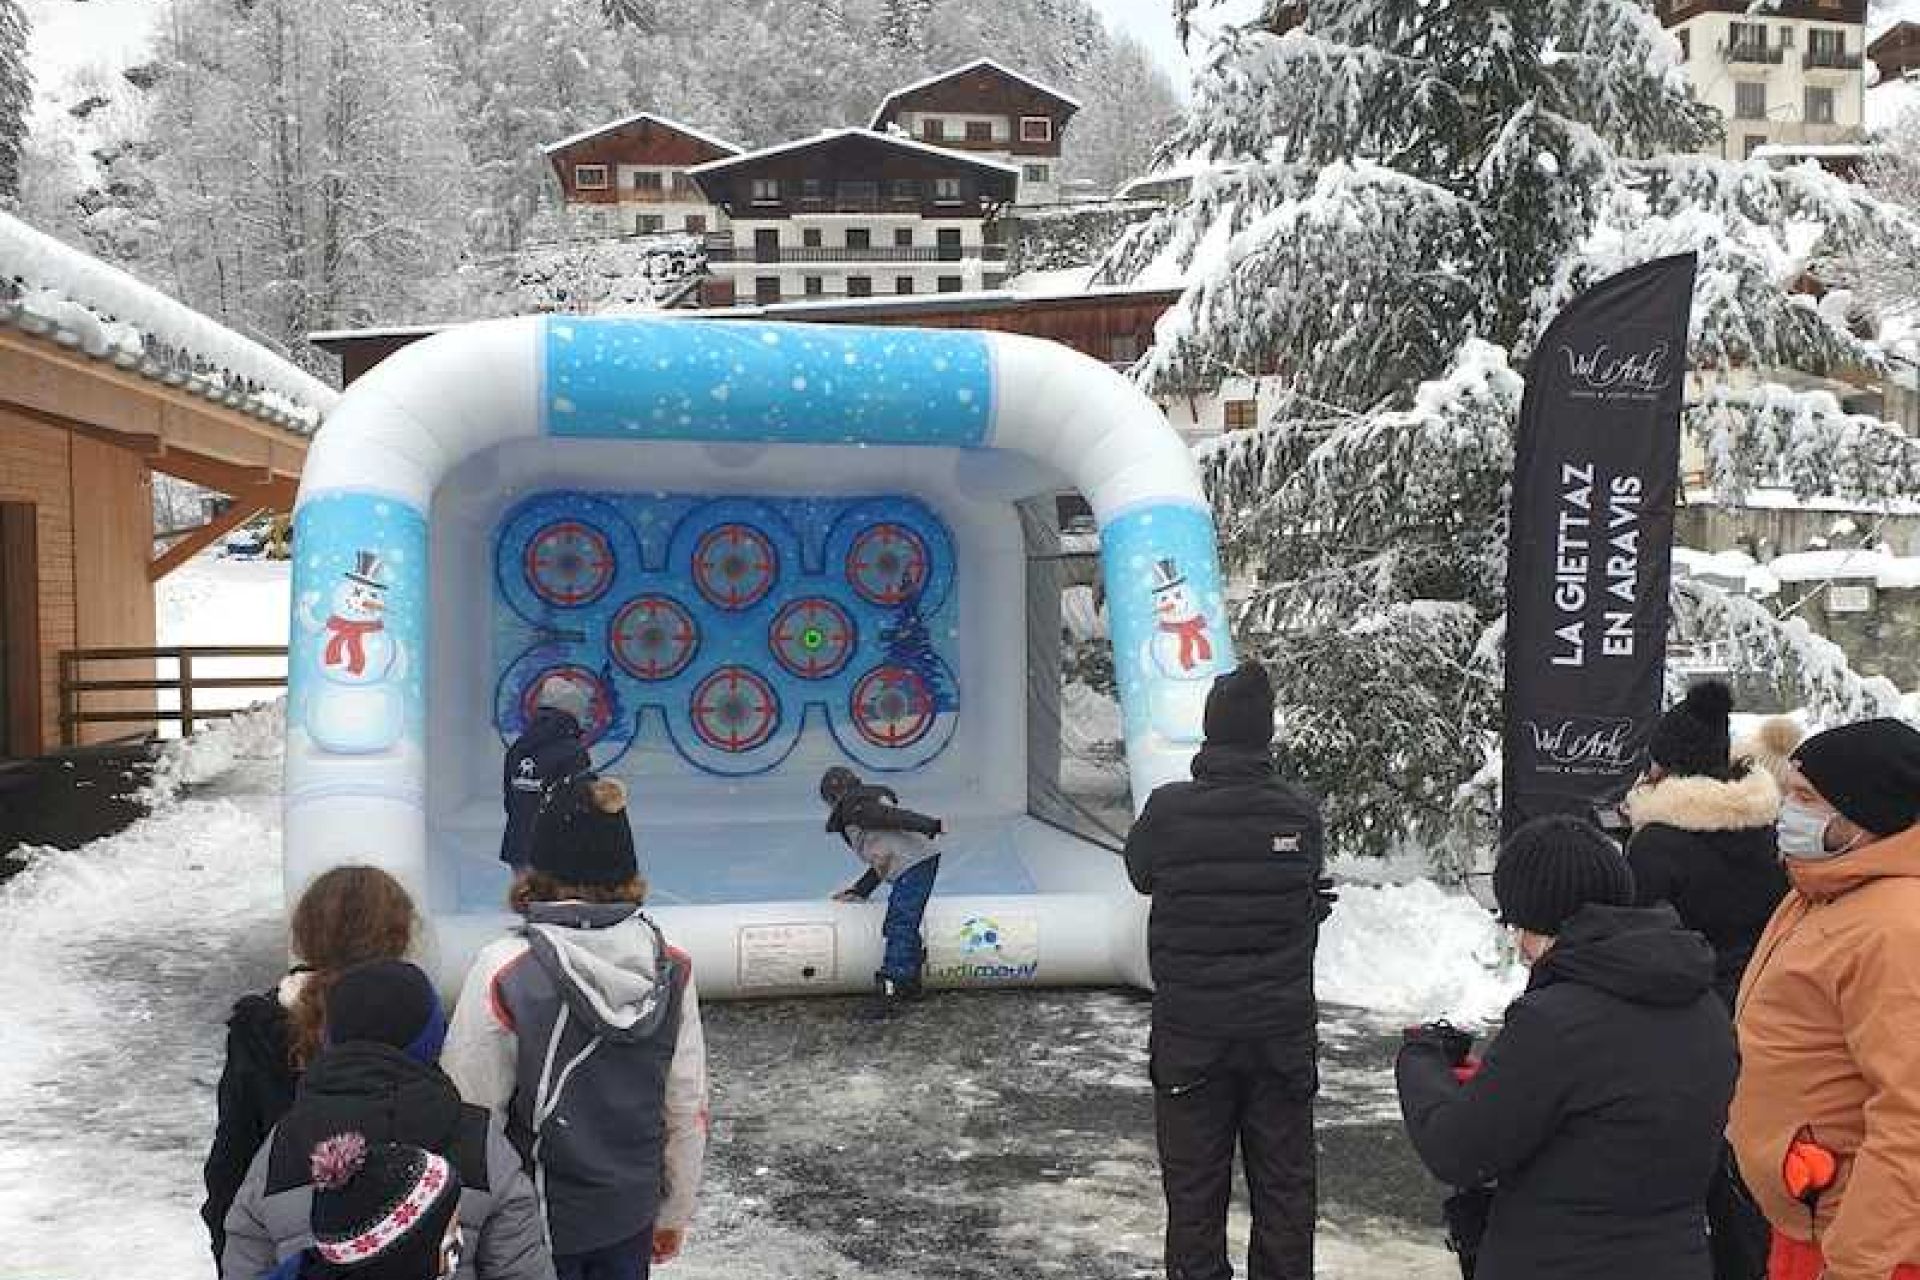 À la station La Giettaz en Aravis, installation du stand de lancer de boules de neige sur cibles interactives en extérieur sur la neige.